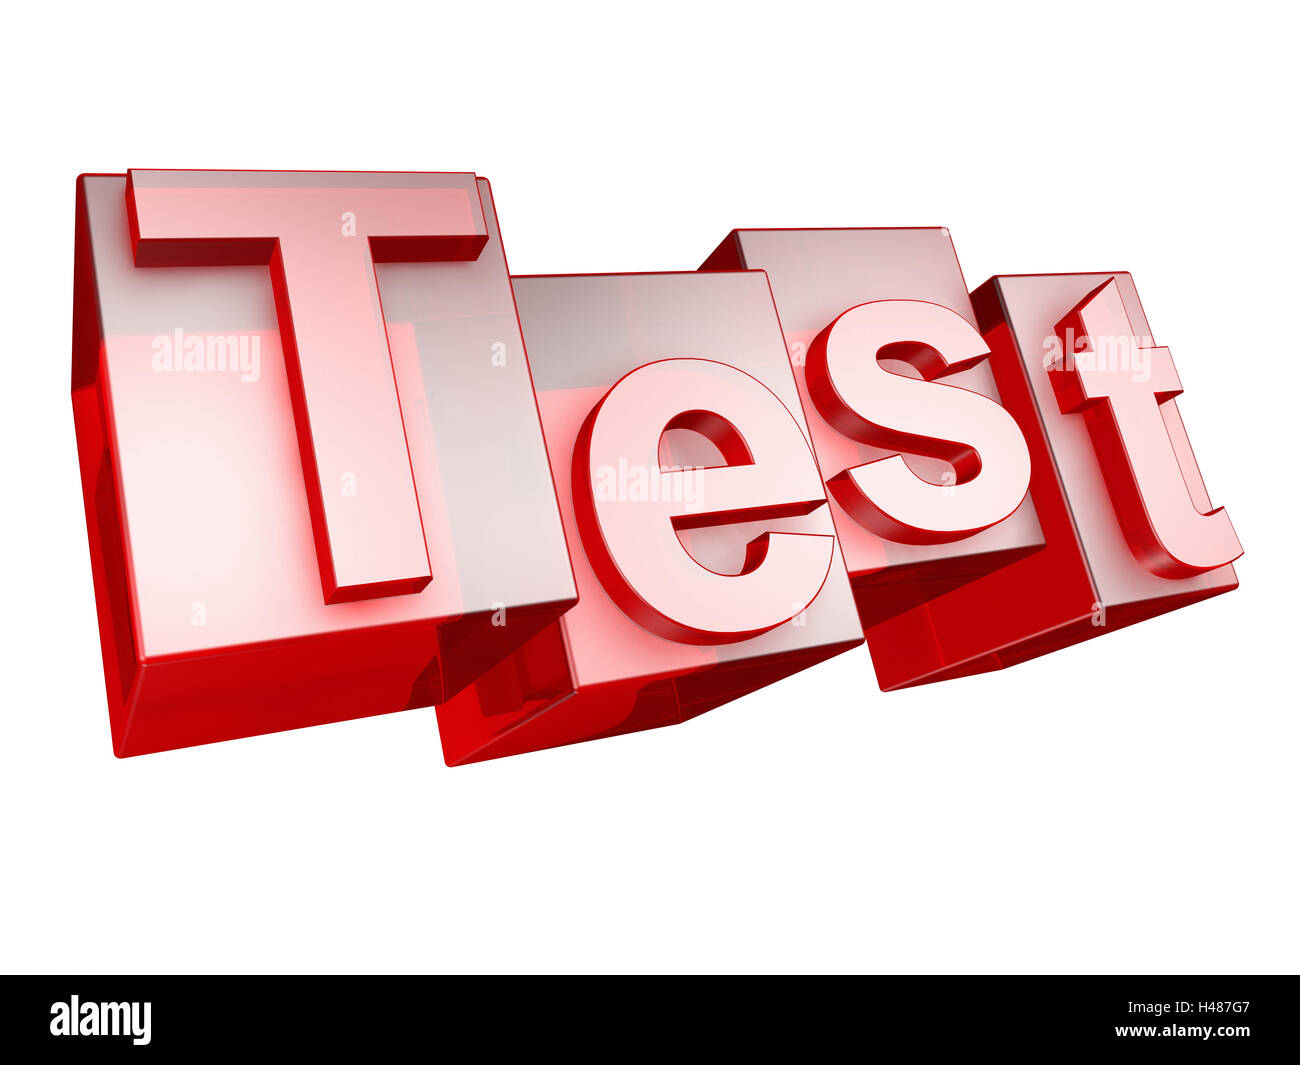 Test, rouge, fond blanc, word, lettres, 3-D, effet, police de caractère, idée, conception, personne, Frei's plate, test, Banque D'Images